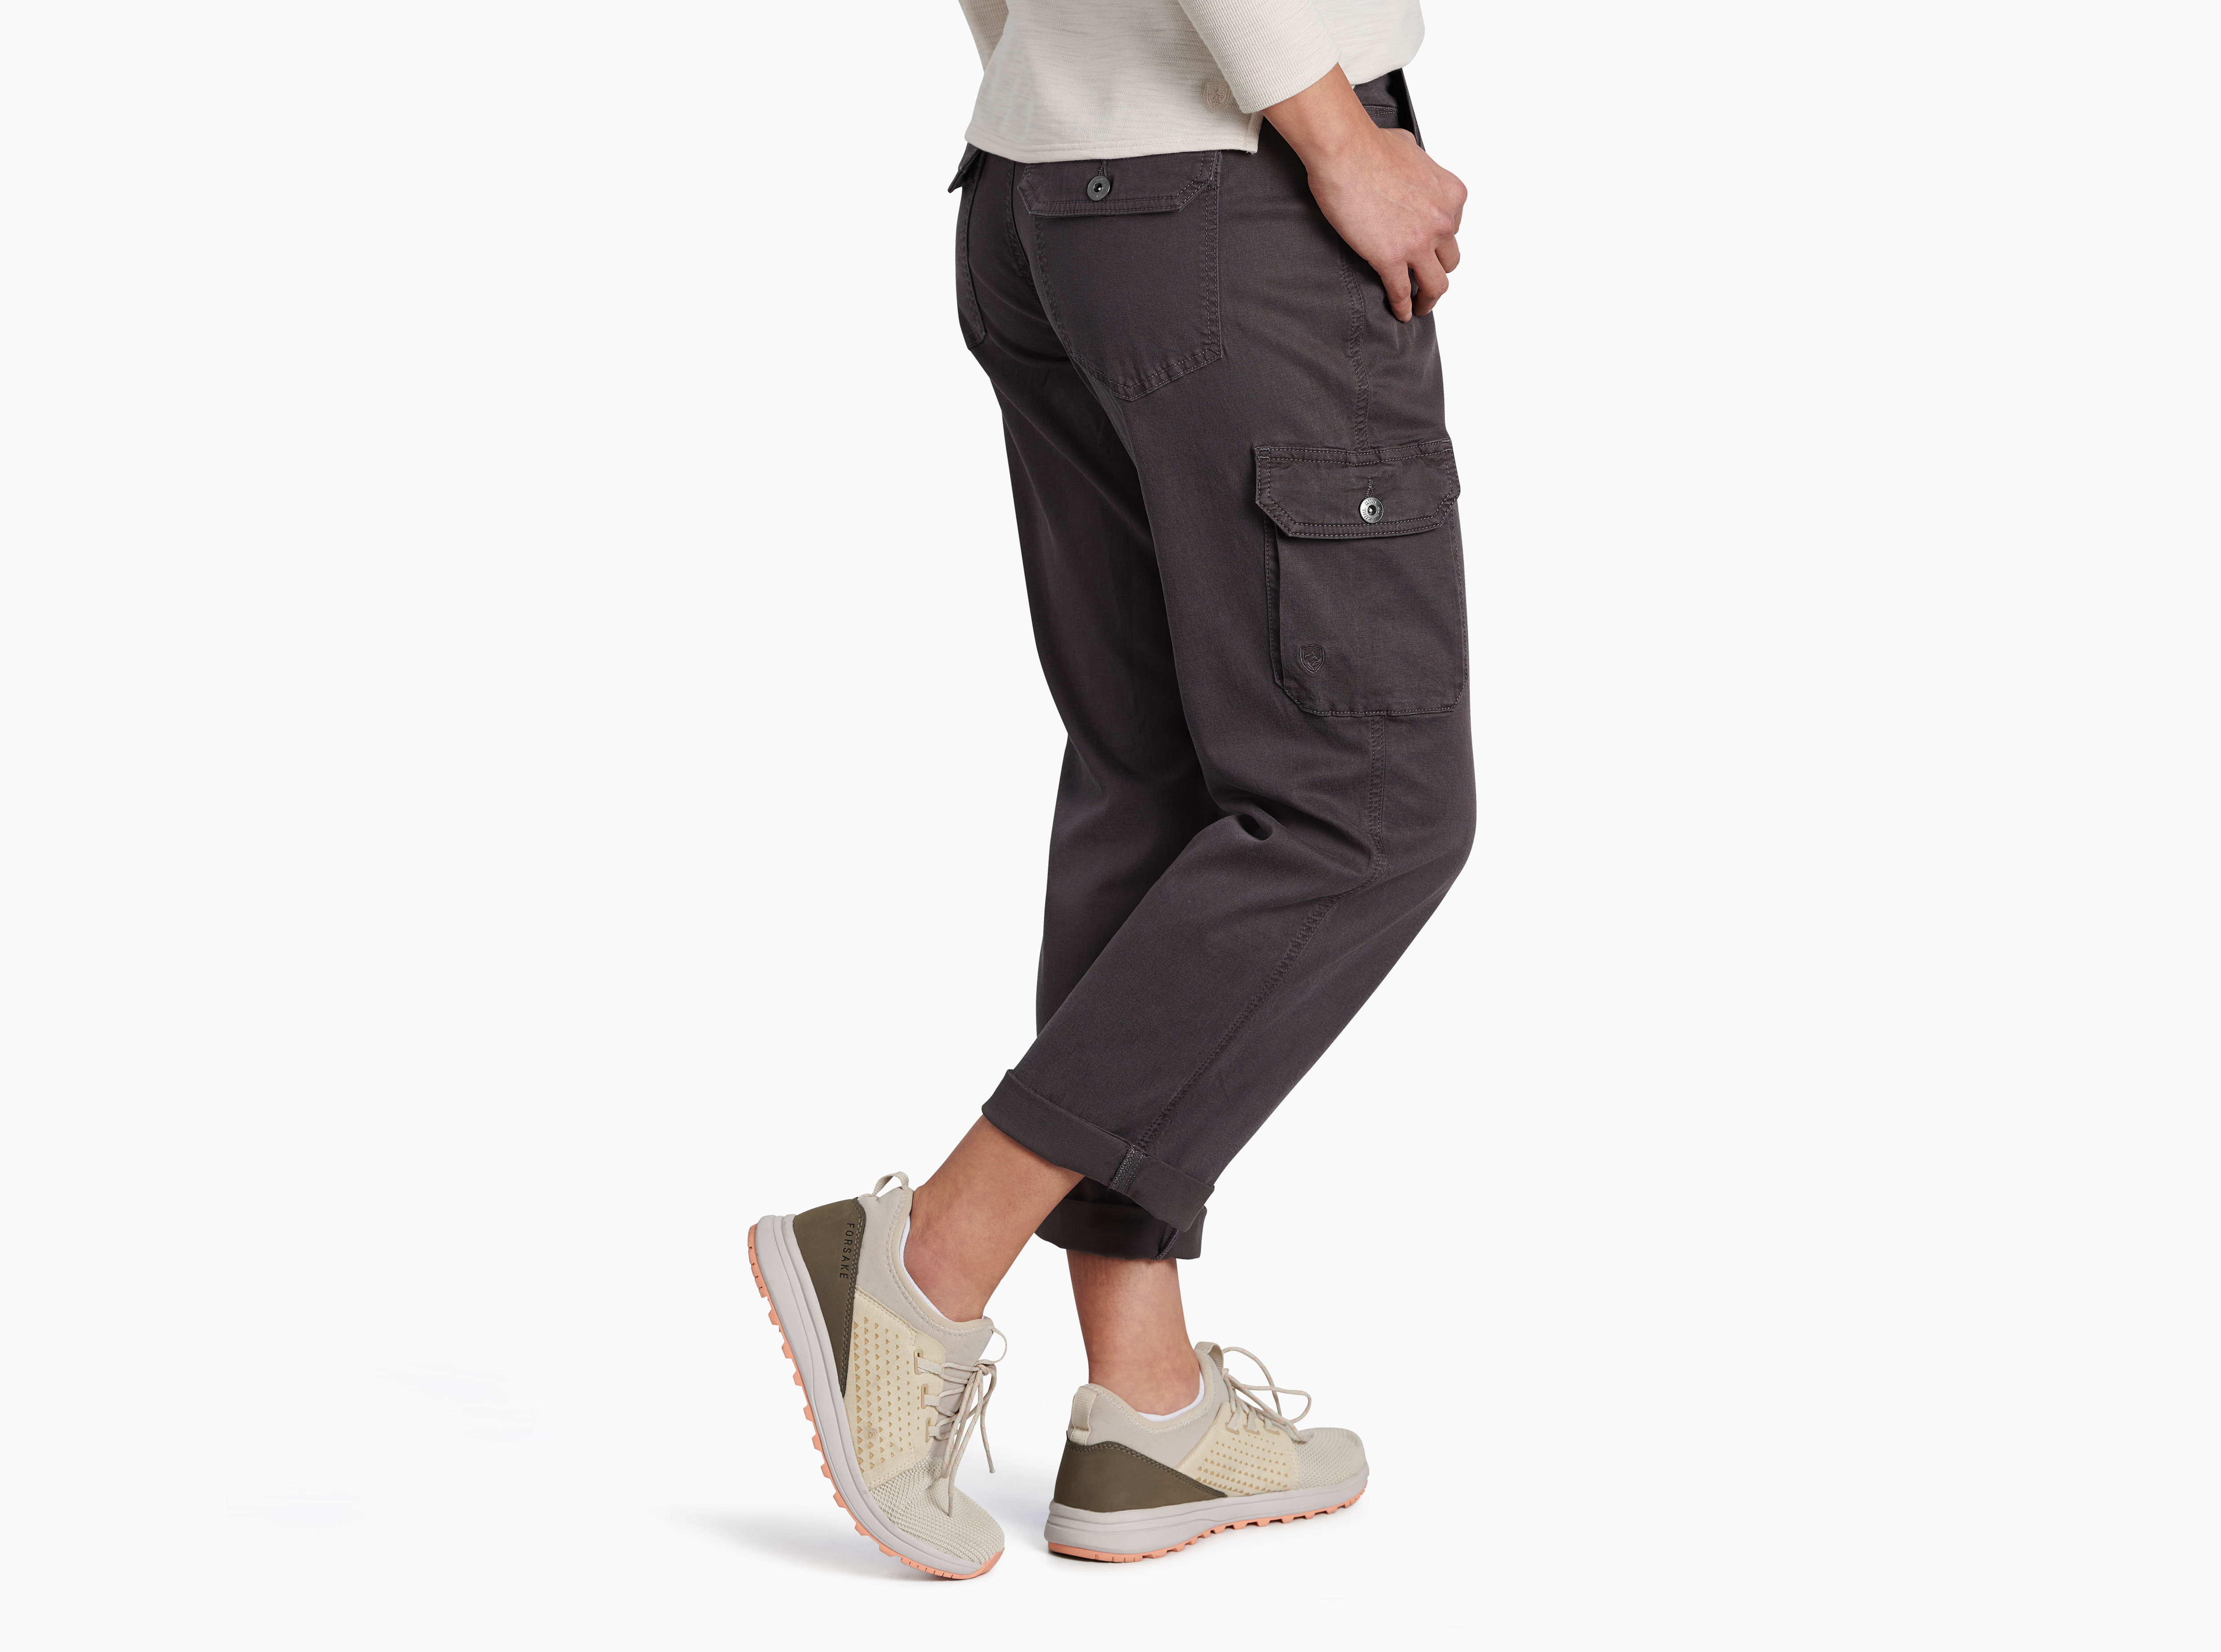 KUHL Mova Pants heathered grey elastic waistband cargo pocket. 8